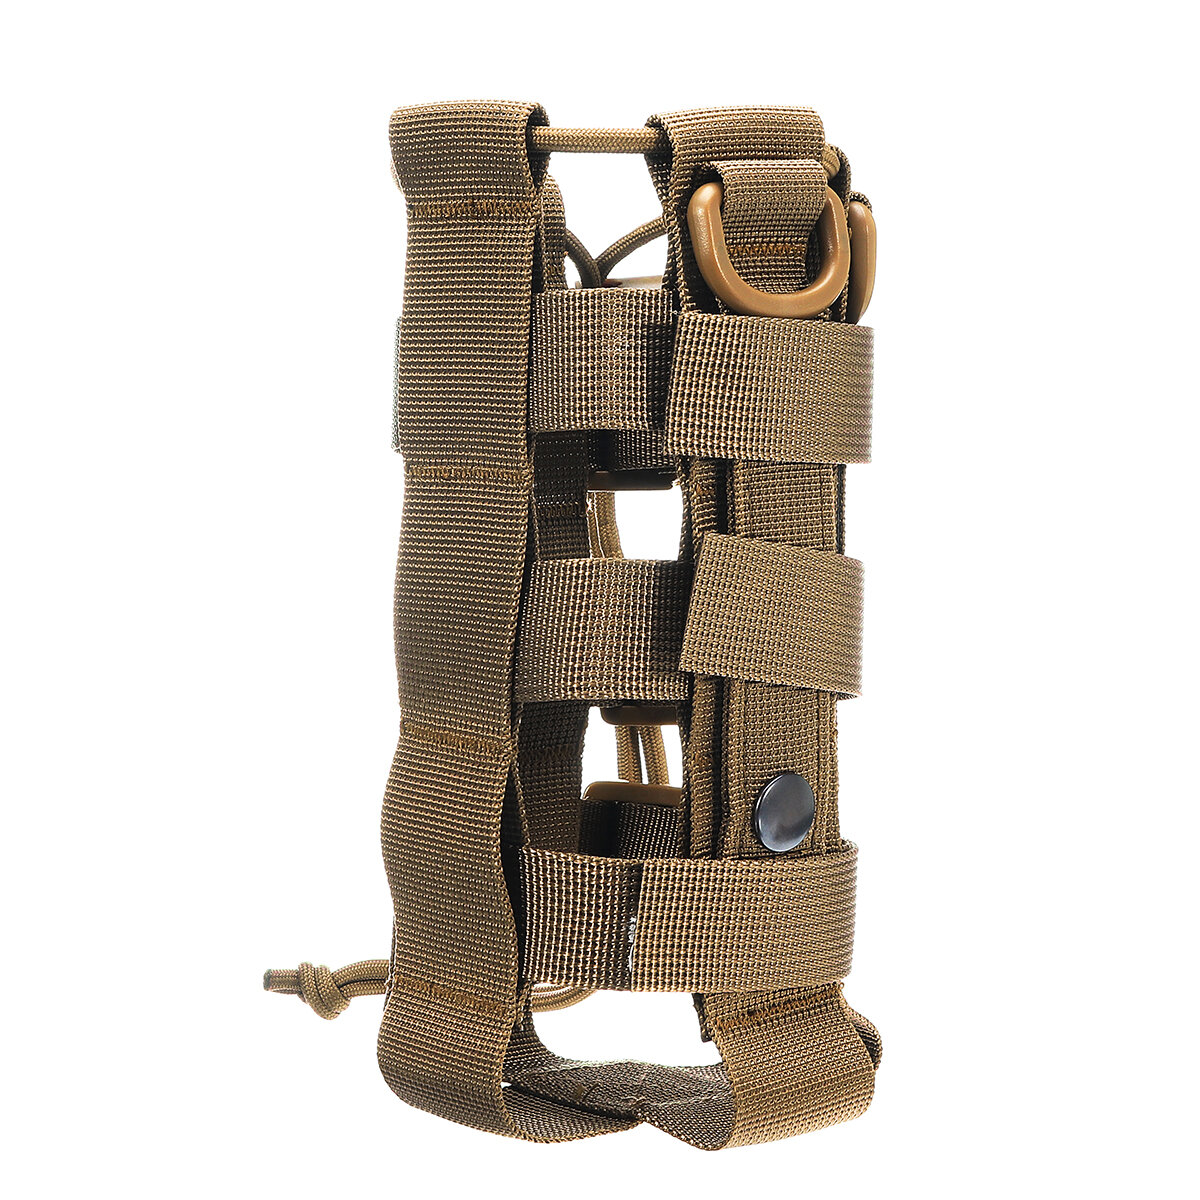 Taktischer Outdoor-Rucksack für Militärcamping, mit Tasche für Wasserflasche und Halterung für Wasserkocher